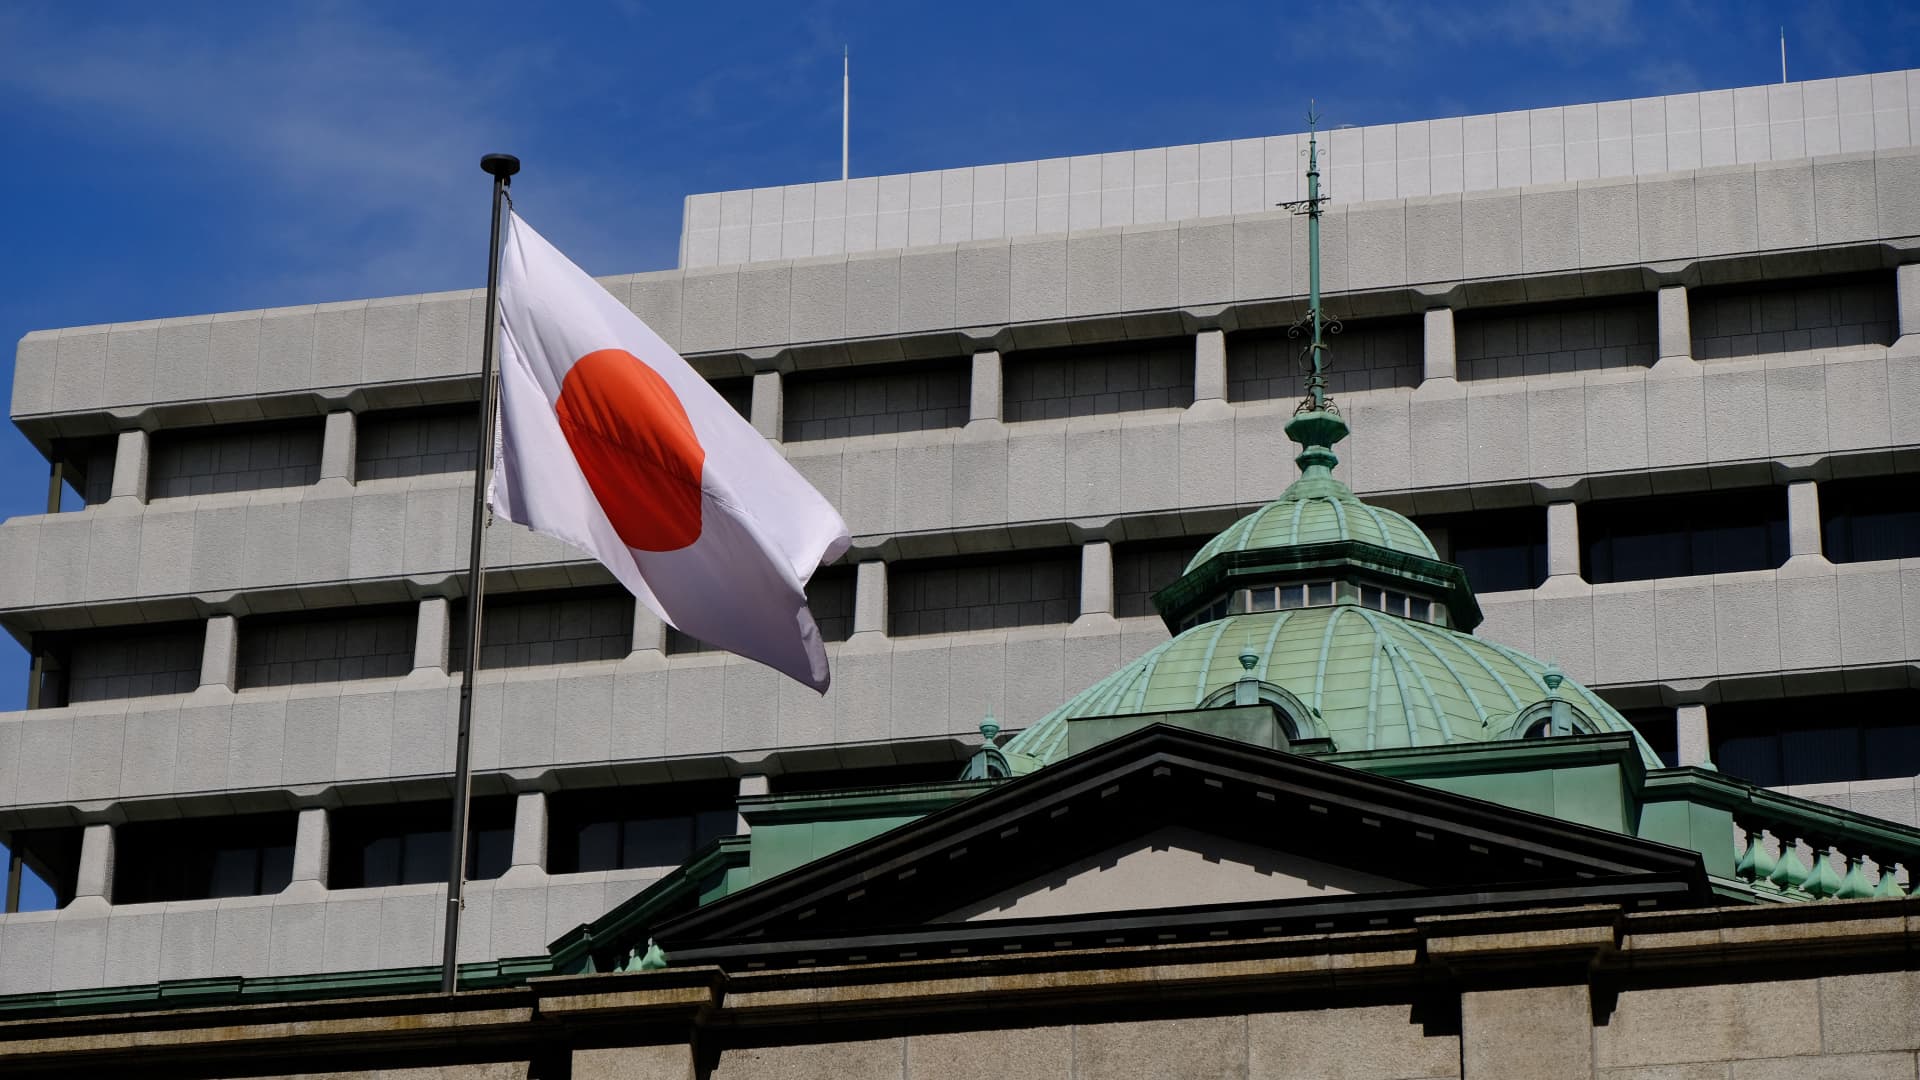 बॉन्ड यील्ड शिफ्ट के साथ बैंक ऑफ जापान ने वैश्विक बाजारों को झटका दिया